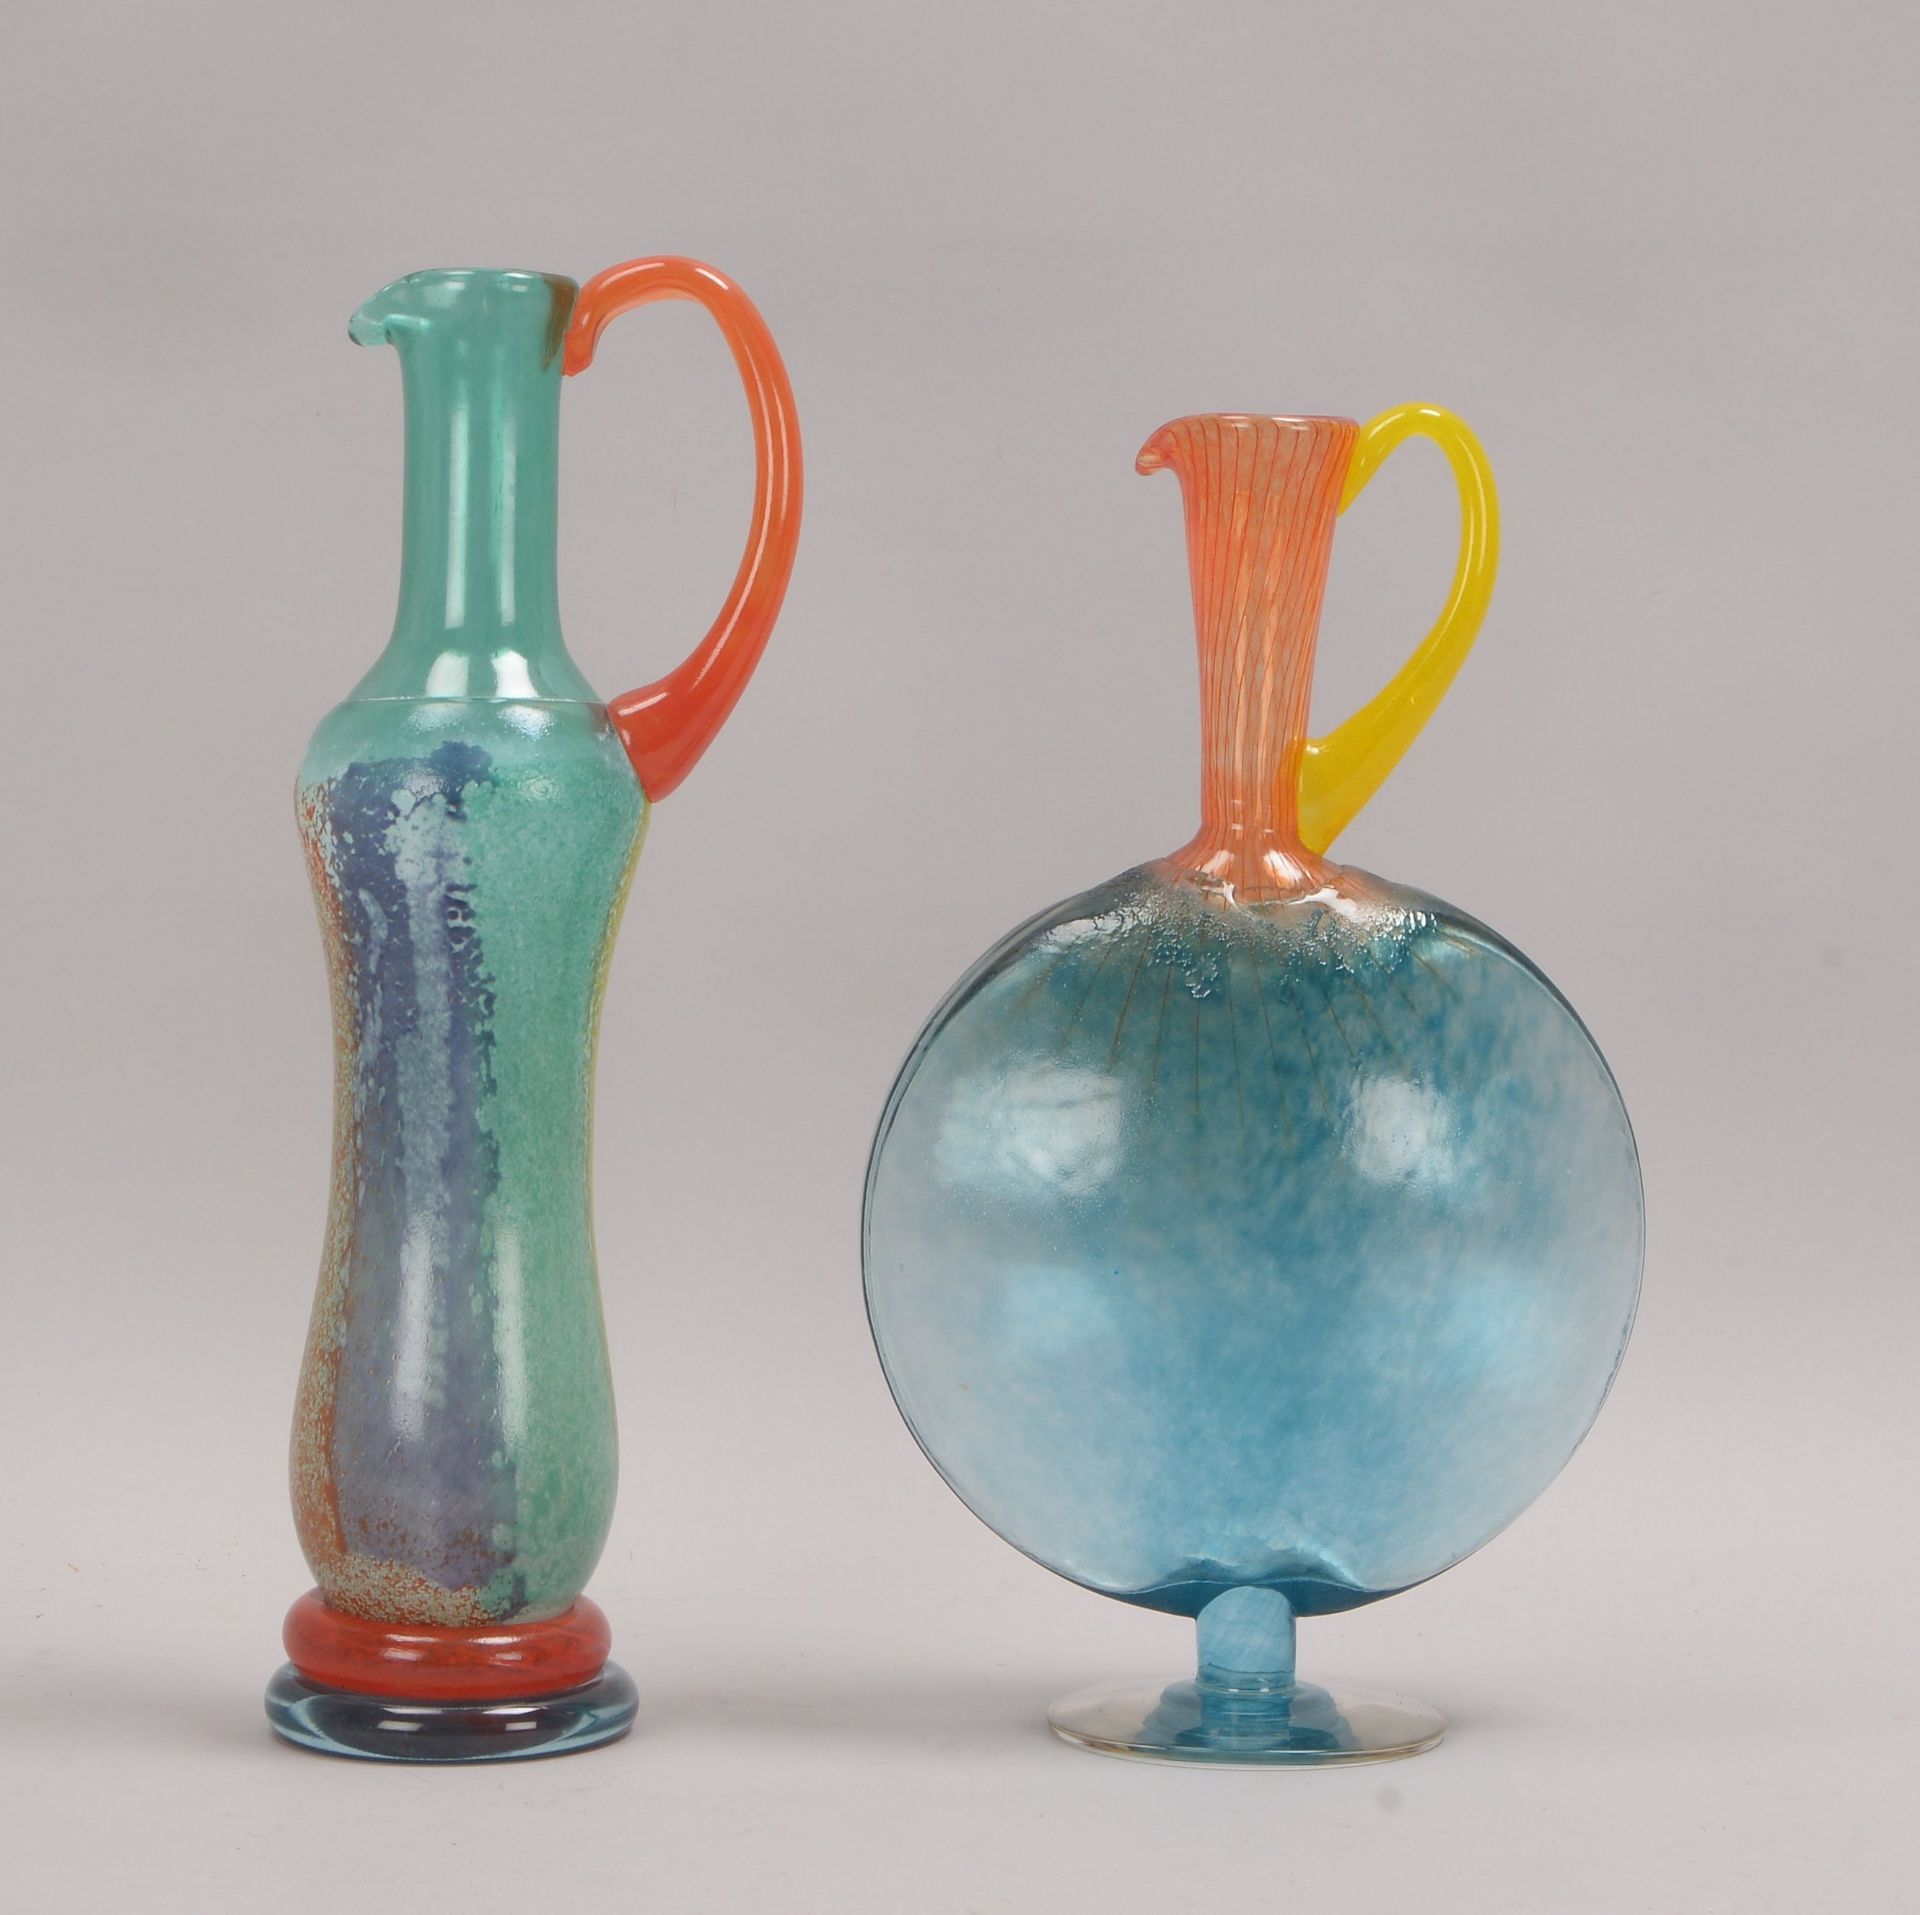 Kosta Boda, Paar Henkelvasen/Flaschen, farbiges Glas, verschiedene Ausführungen, im Boden jeweils mi